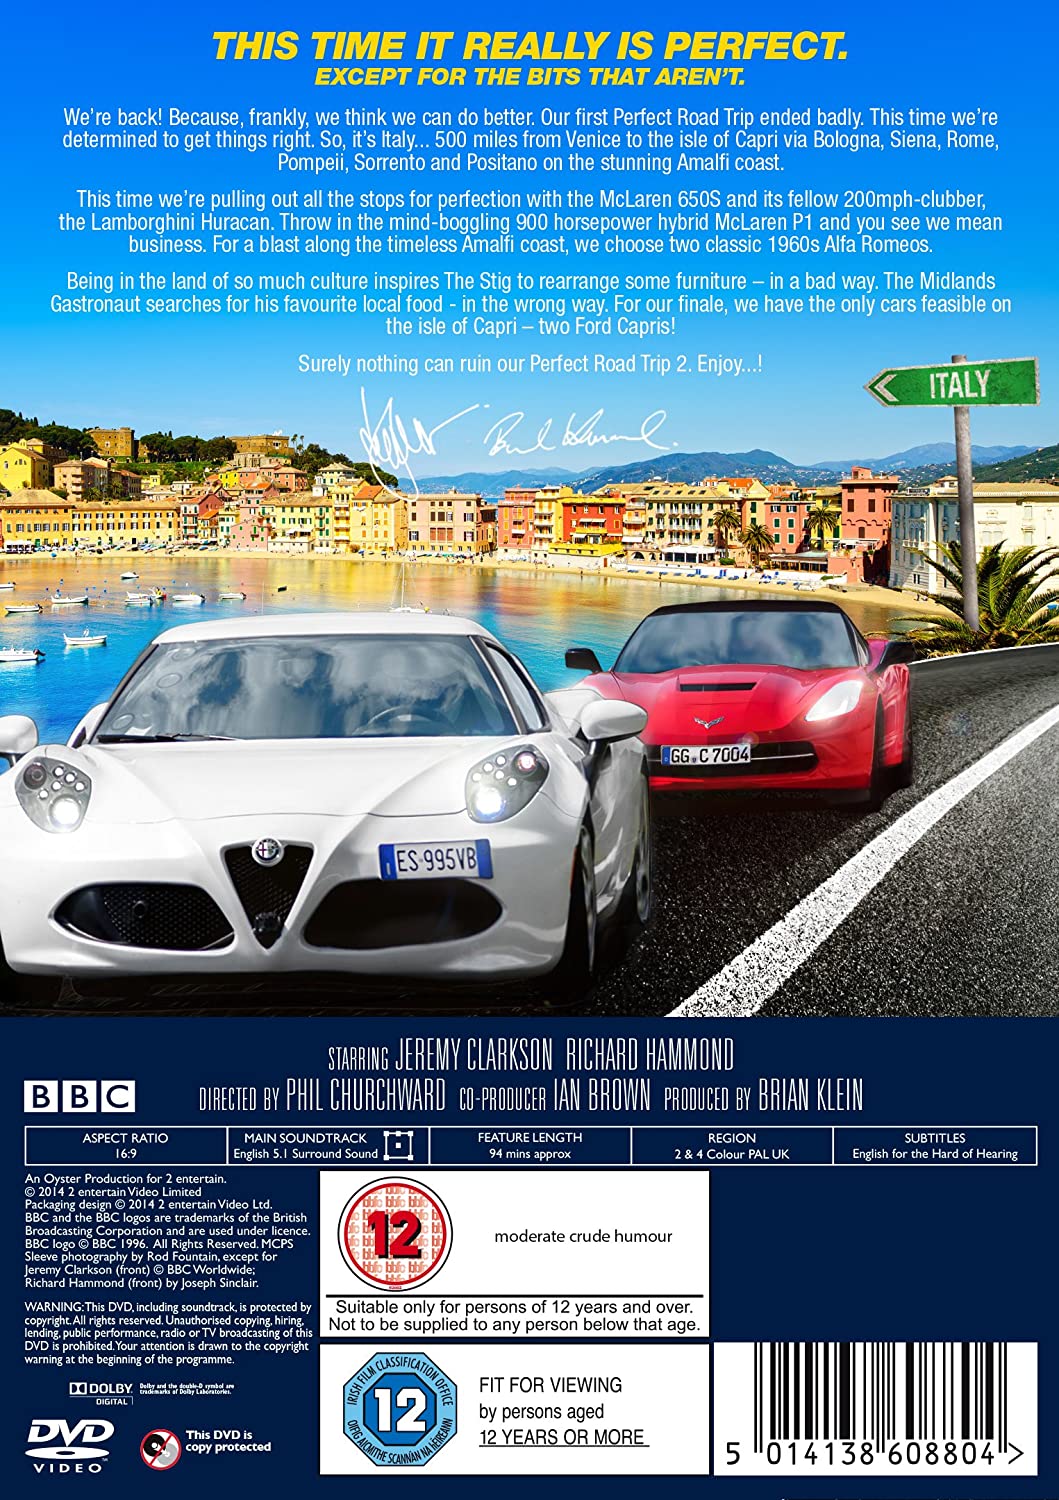 Top Gear - El viaje por carretera perfecto 2 [DVD]